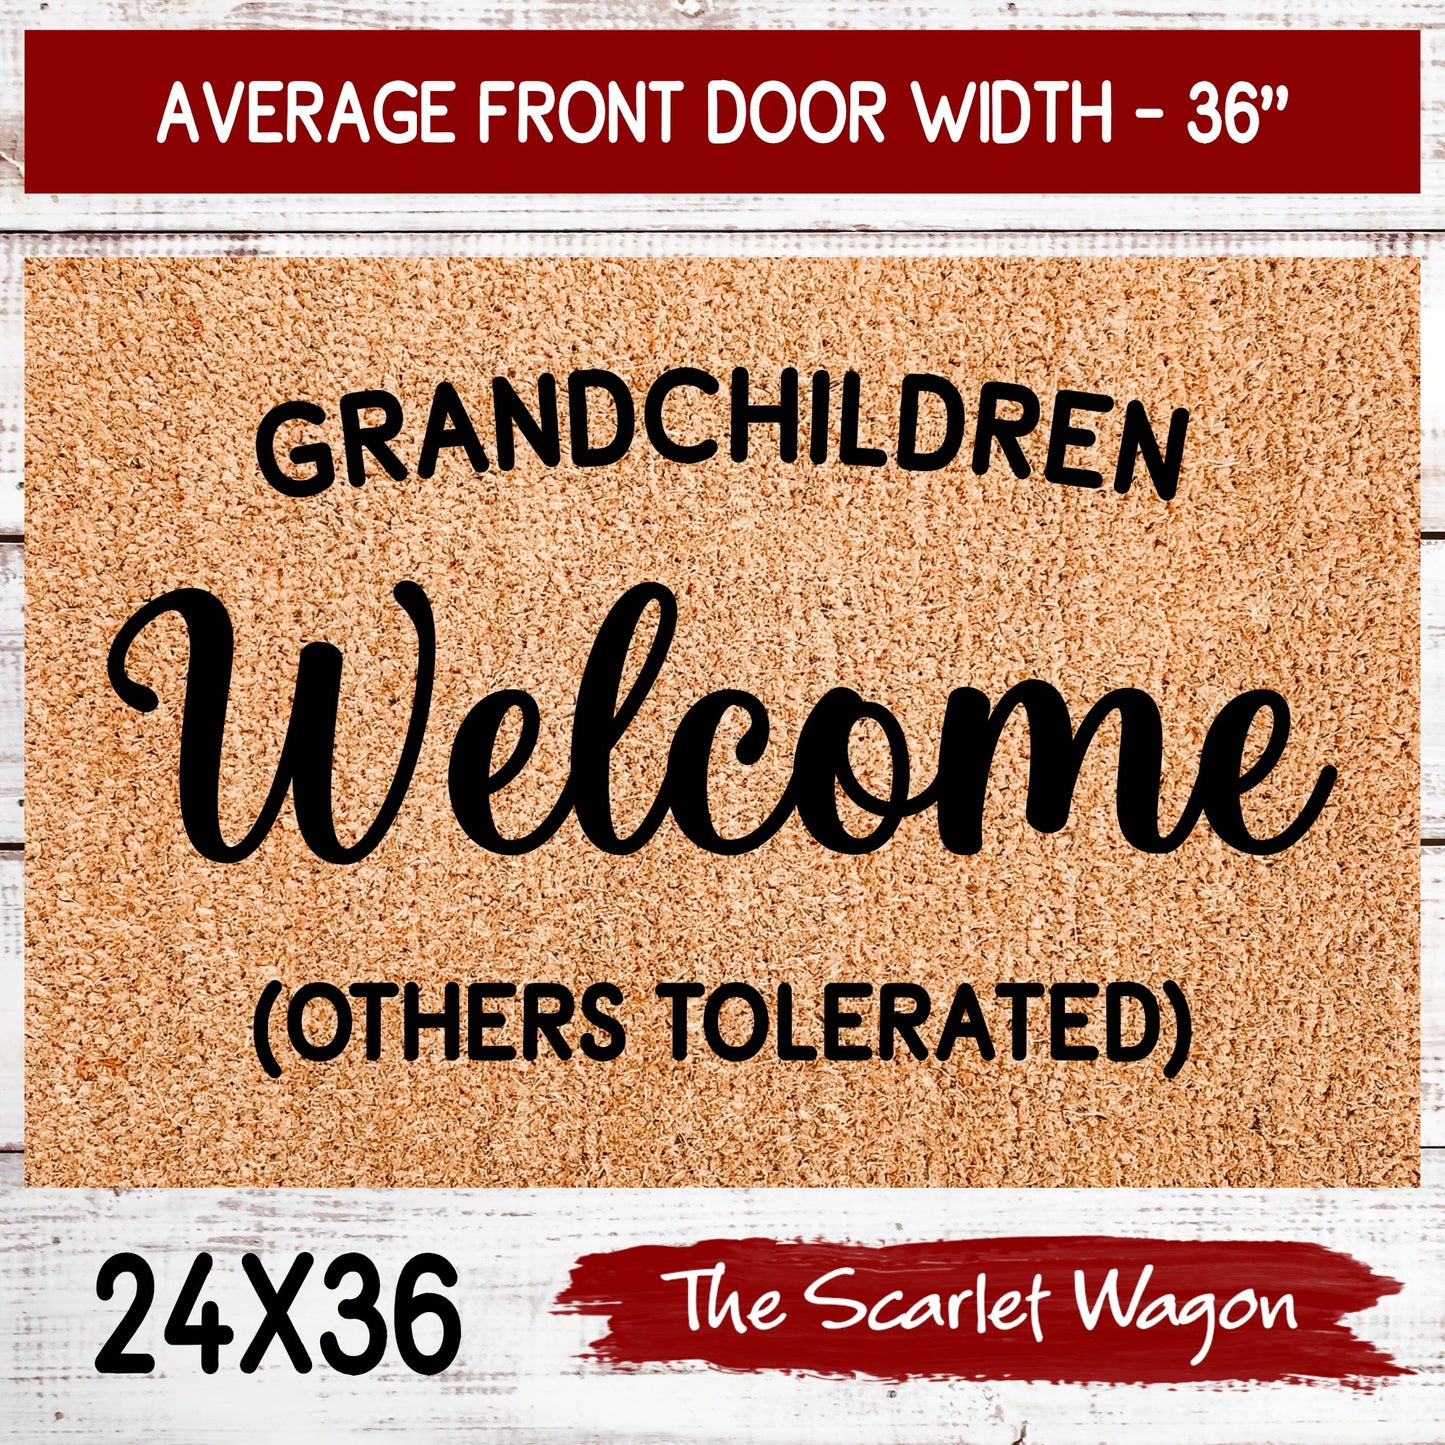 Grandchildren Welcome Others Tolerated Door Mats teelaunch 